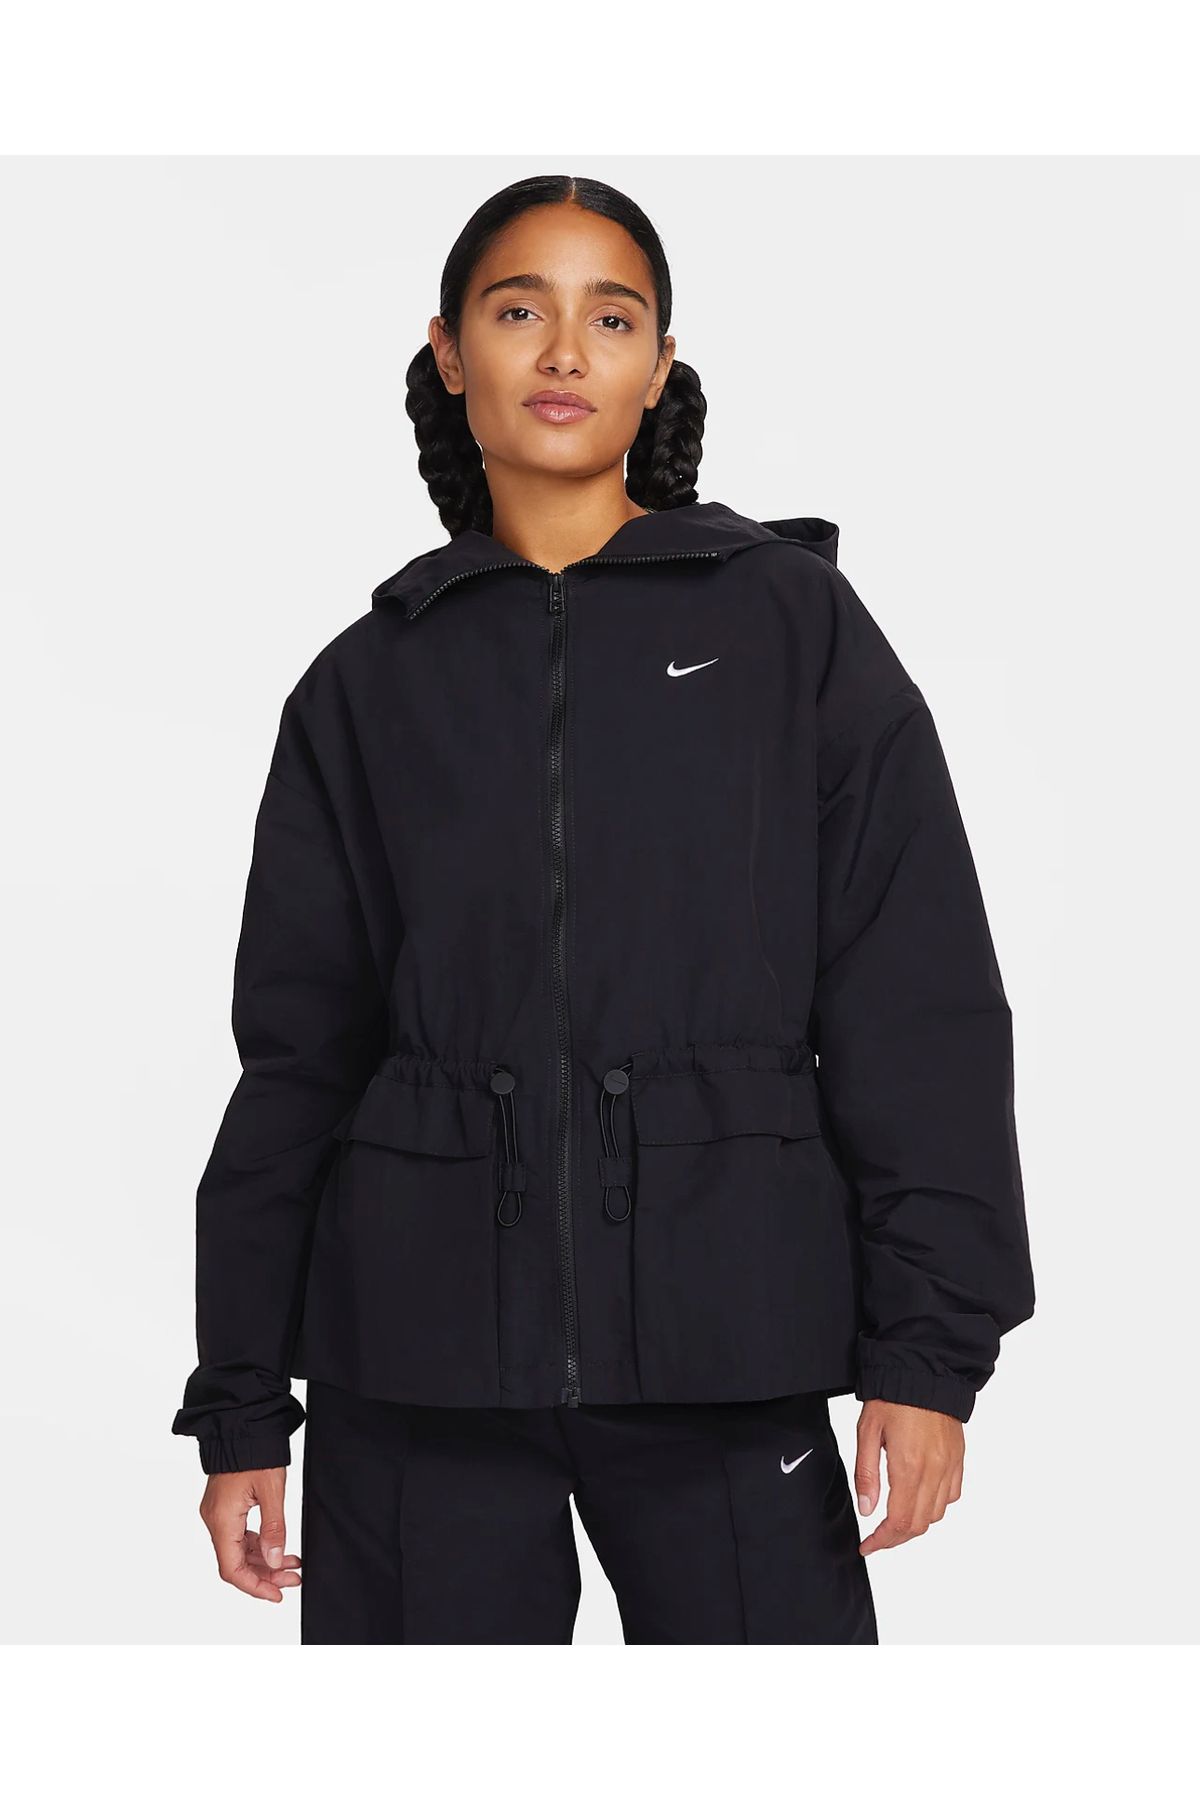 Nike Sportswear Everything Suya Dayanıklı Oversize(Büyük Kalıp) Kapüşonlu Ceket